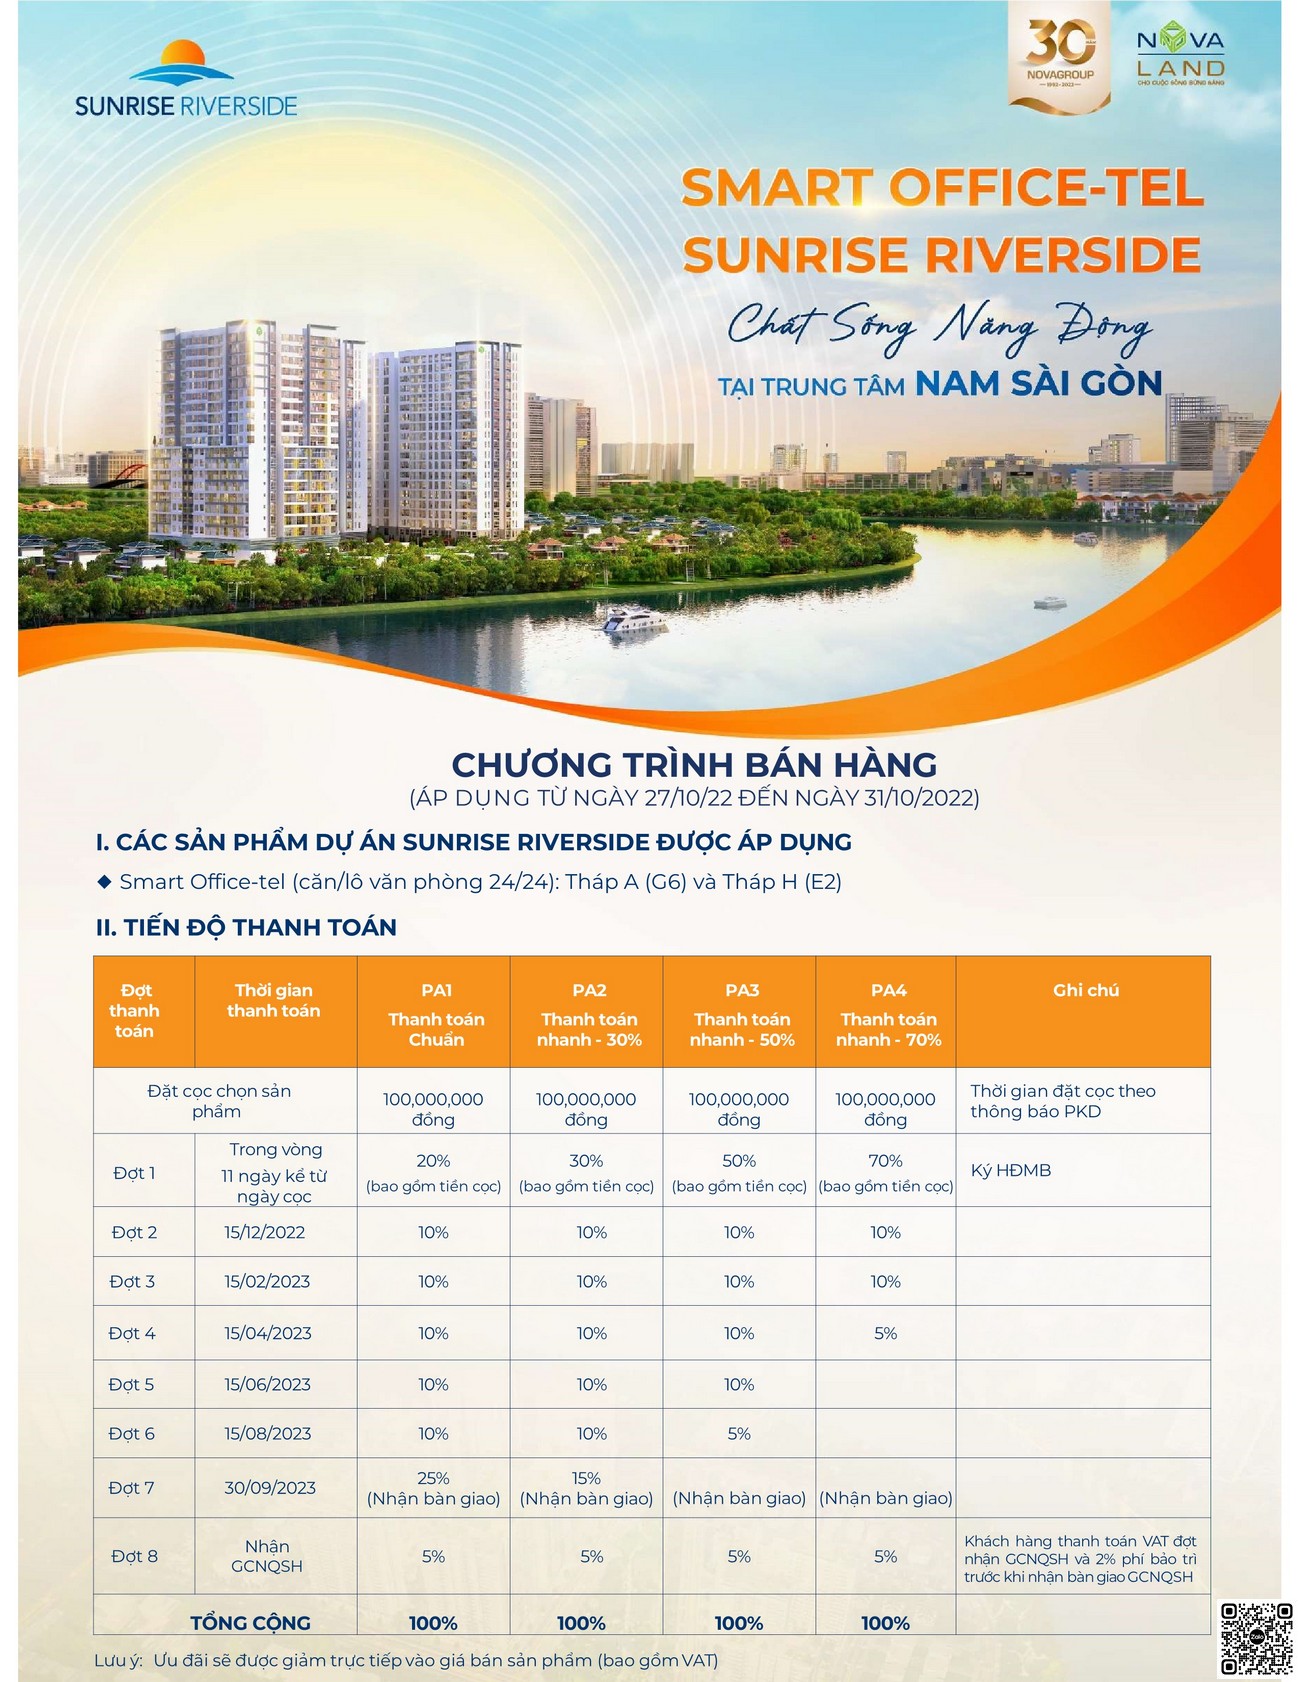 Phương thức thanh toán dự án căn hộ Sunrise Riverside Nhà Bè.